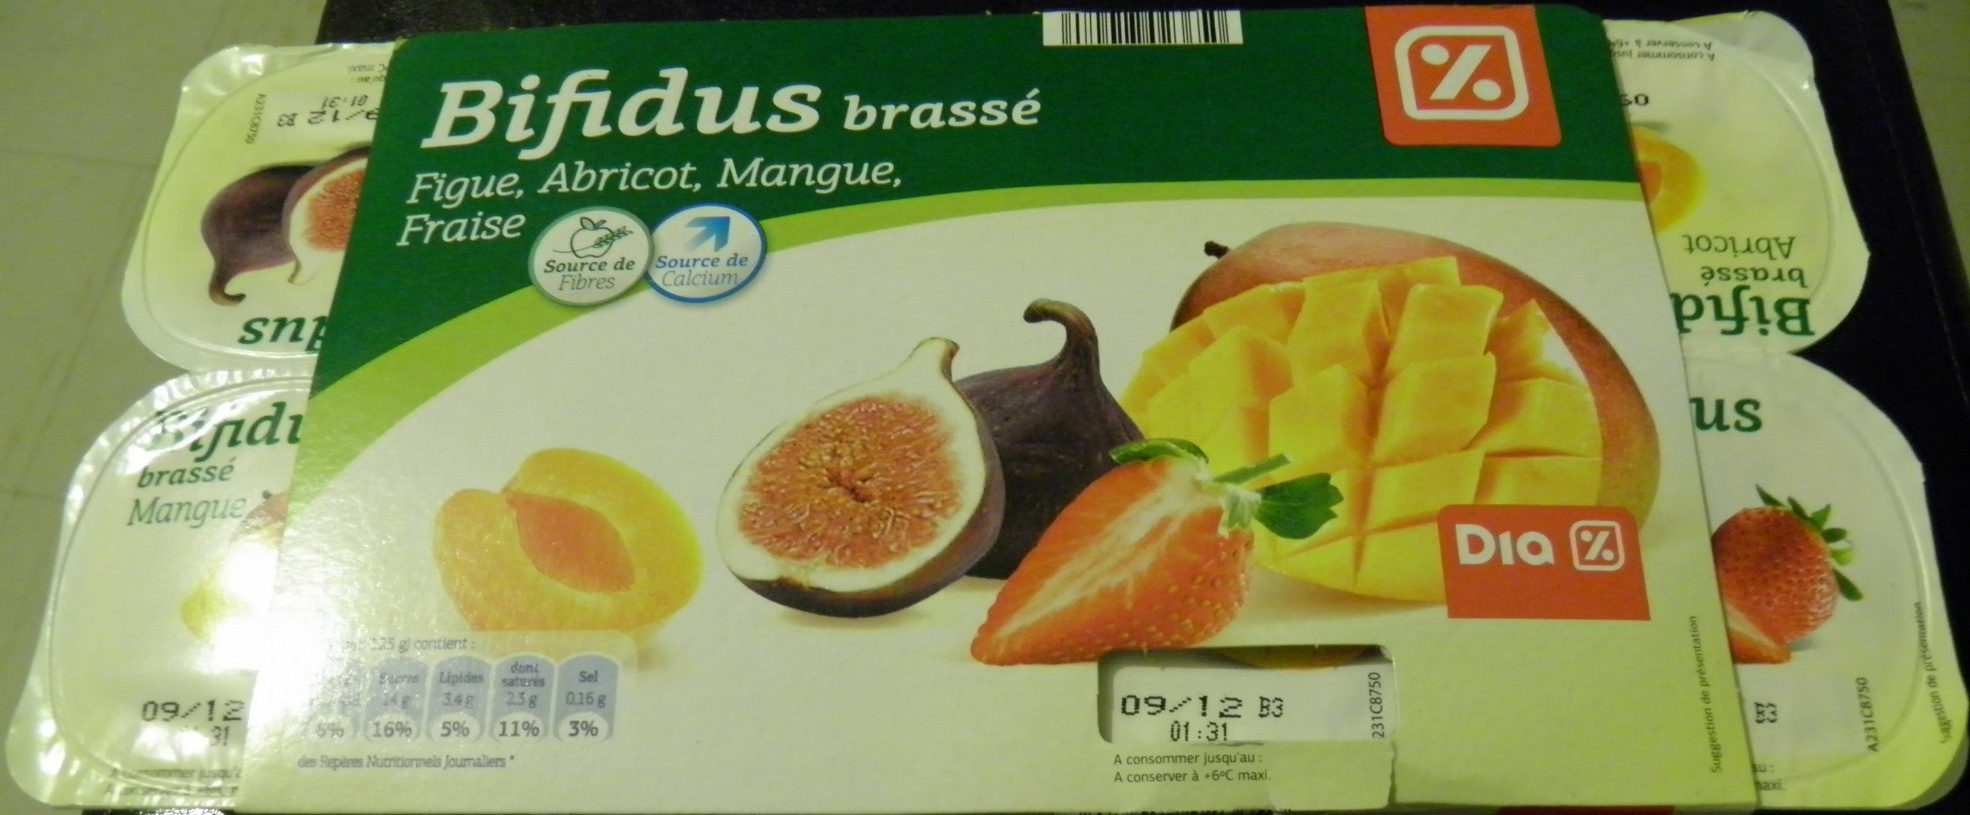 Bifidus brassé (Figue, Abricot, Mangue, Fraise) 8 Pots - Produkt - fr